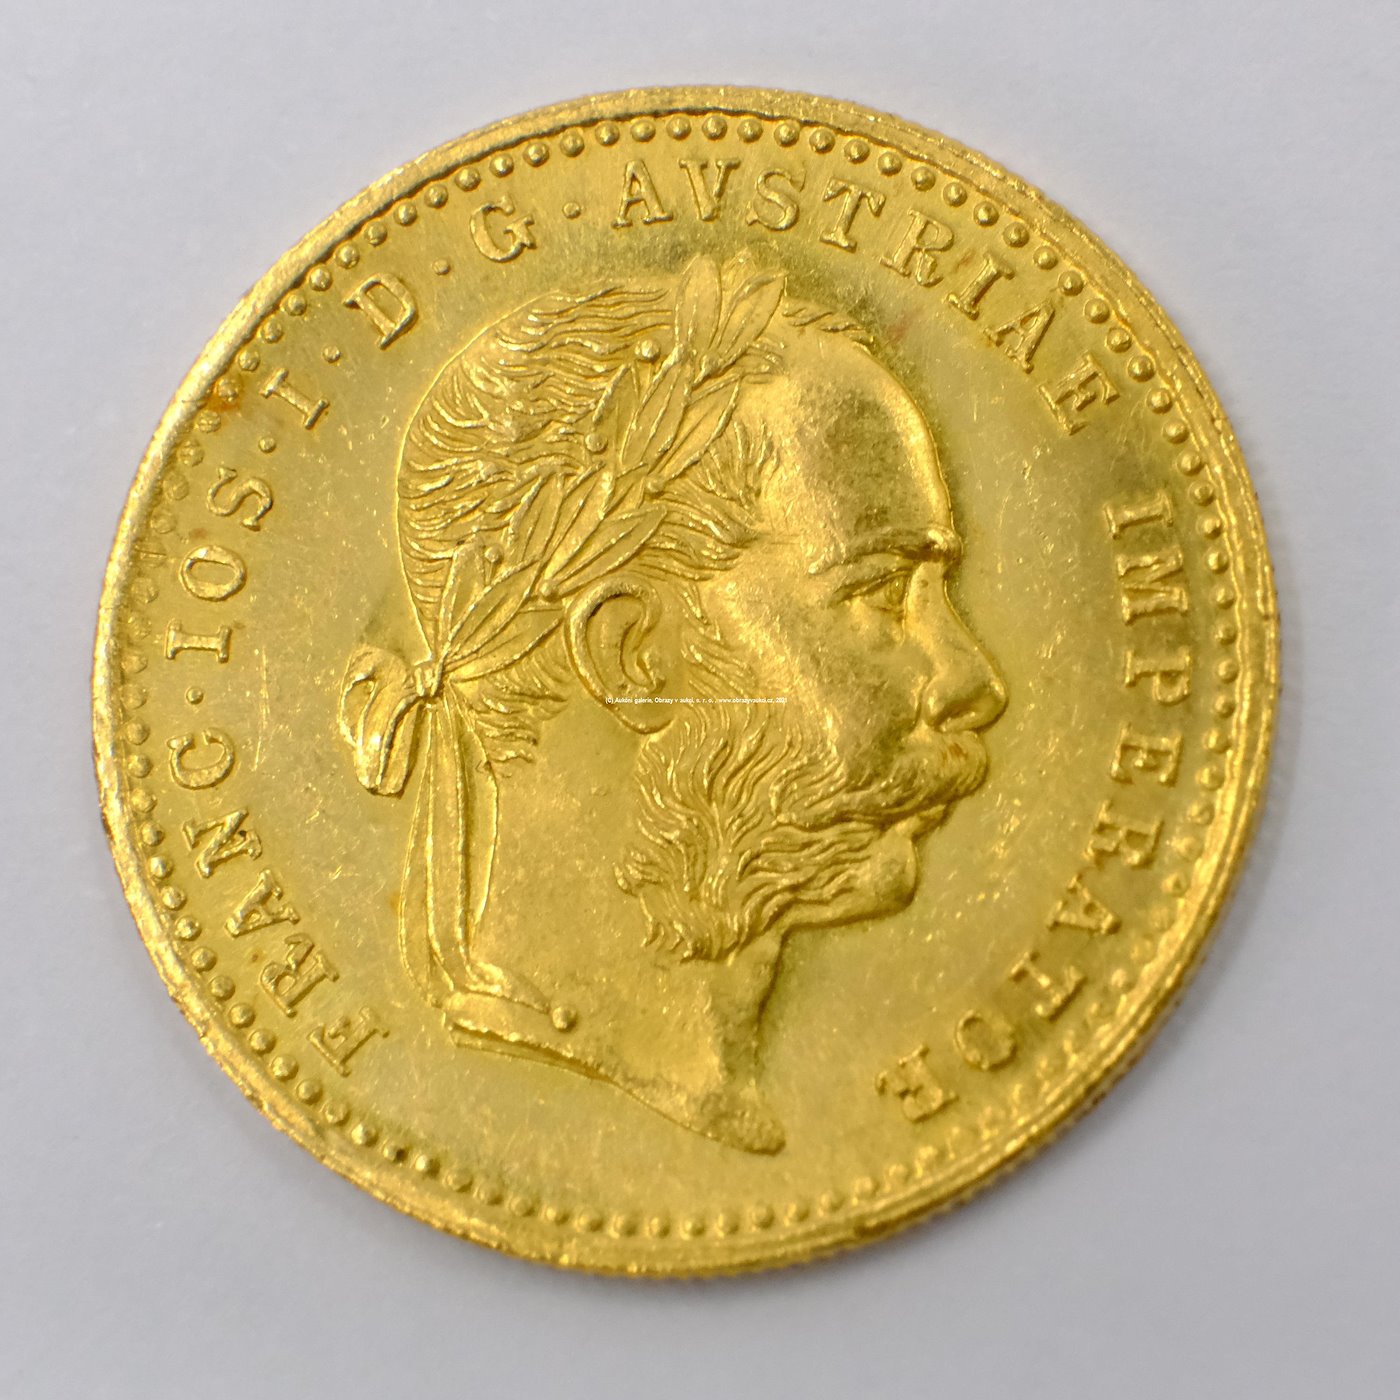 .. - Rakousko Uhersko zlatý 1 dukát 1881. Zlato 986/1000, hrubá hmotnost mince 3,491g